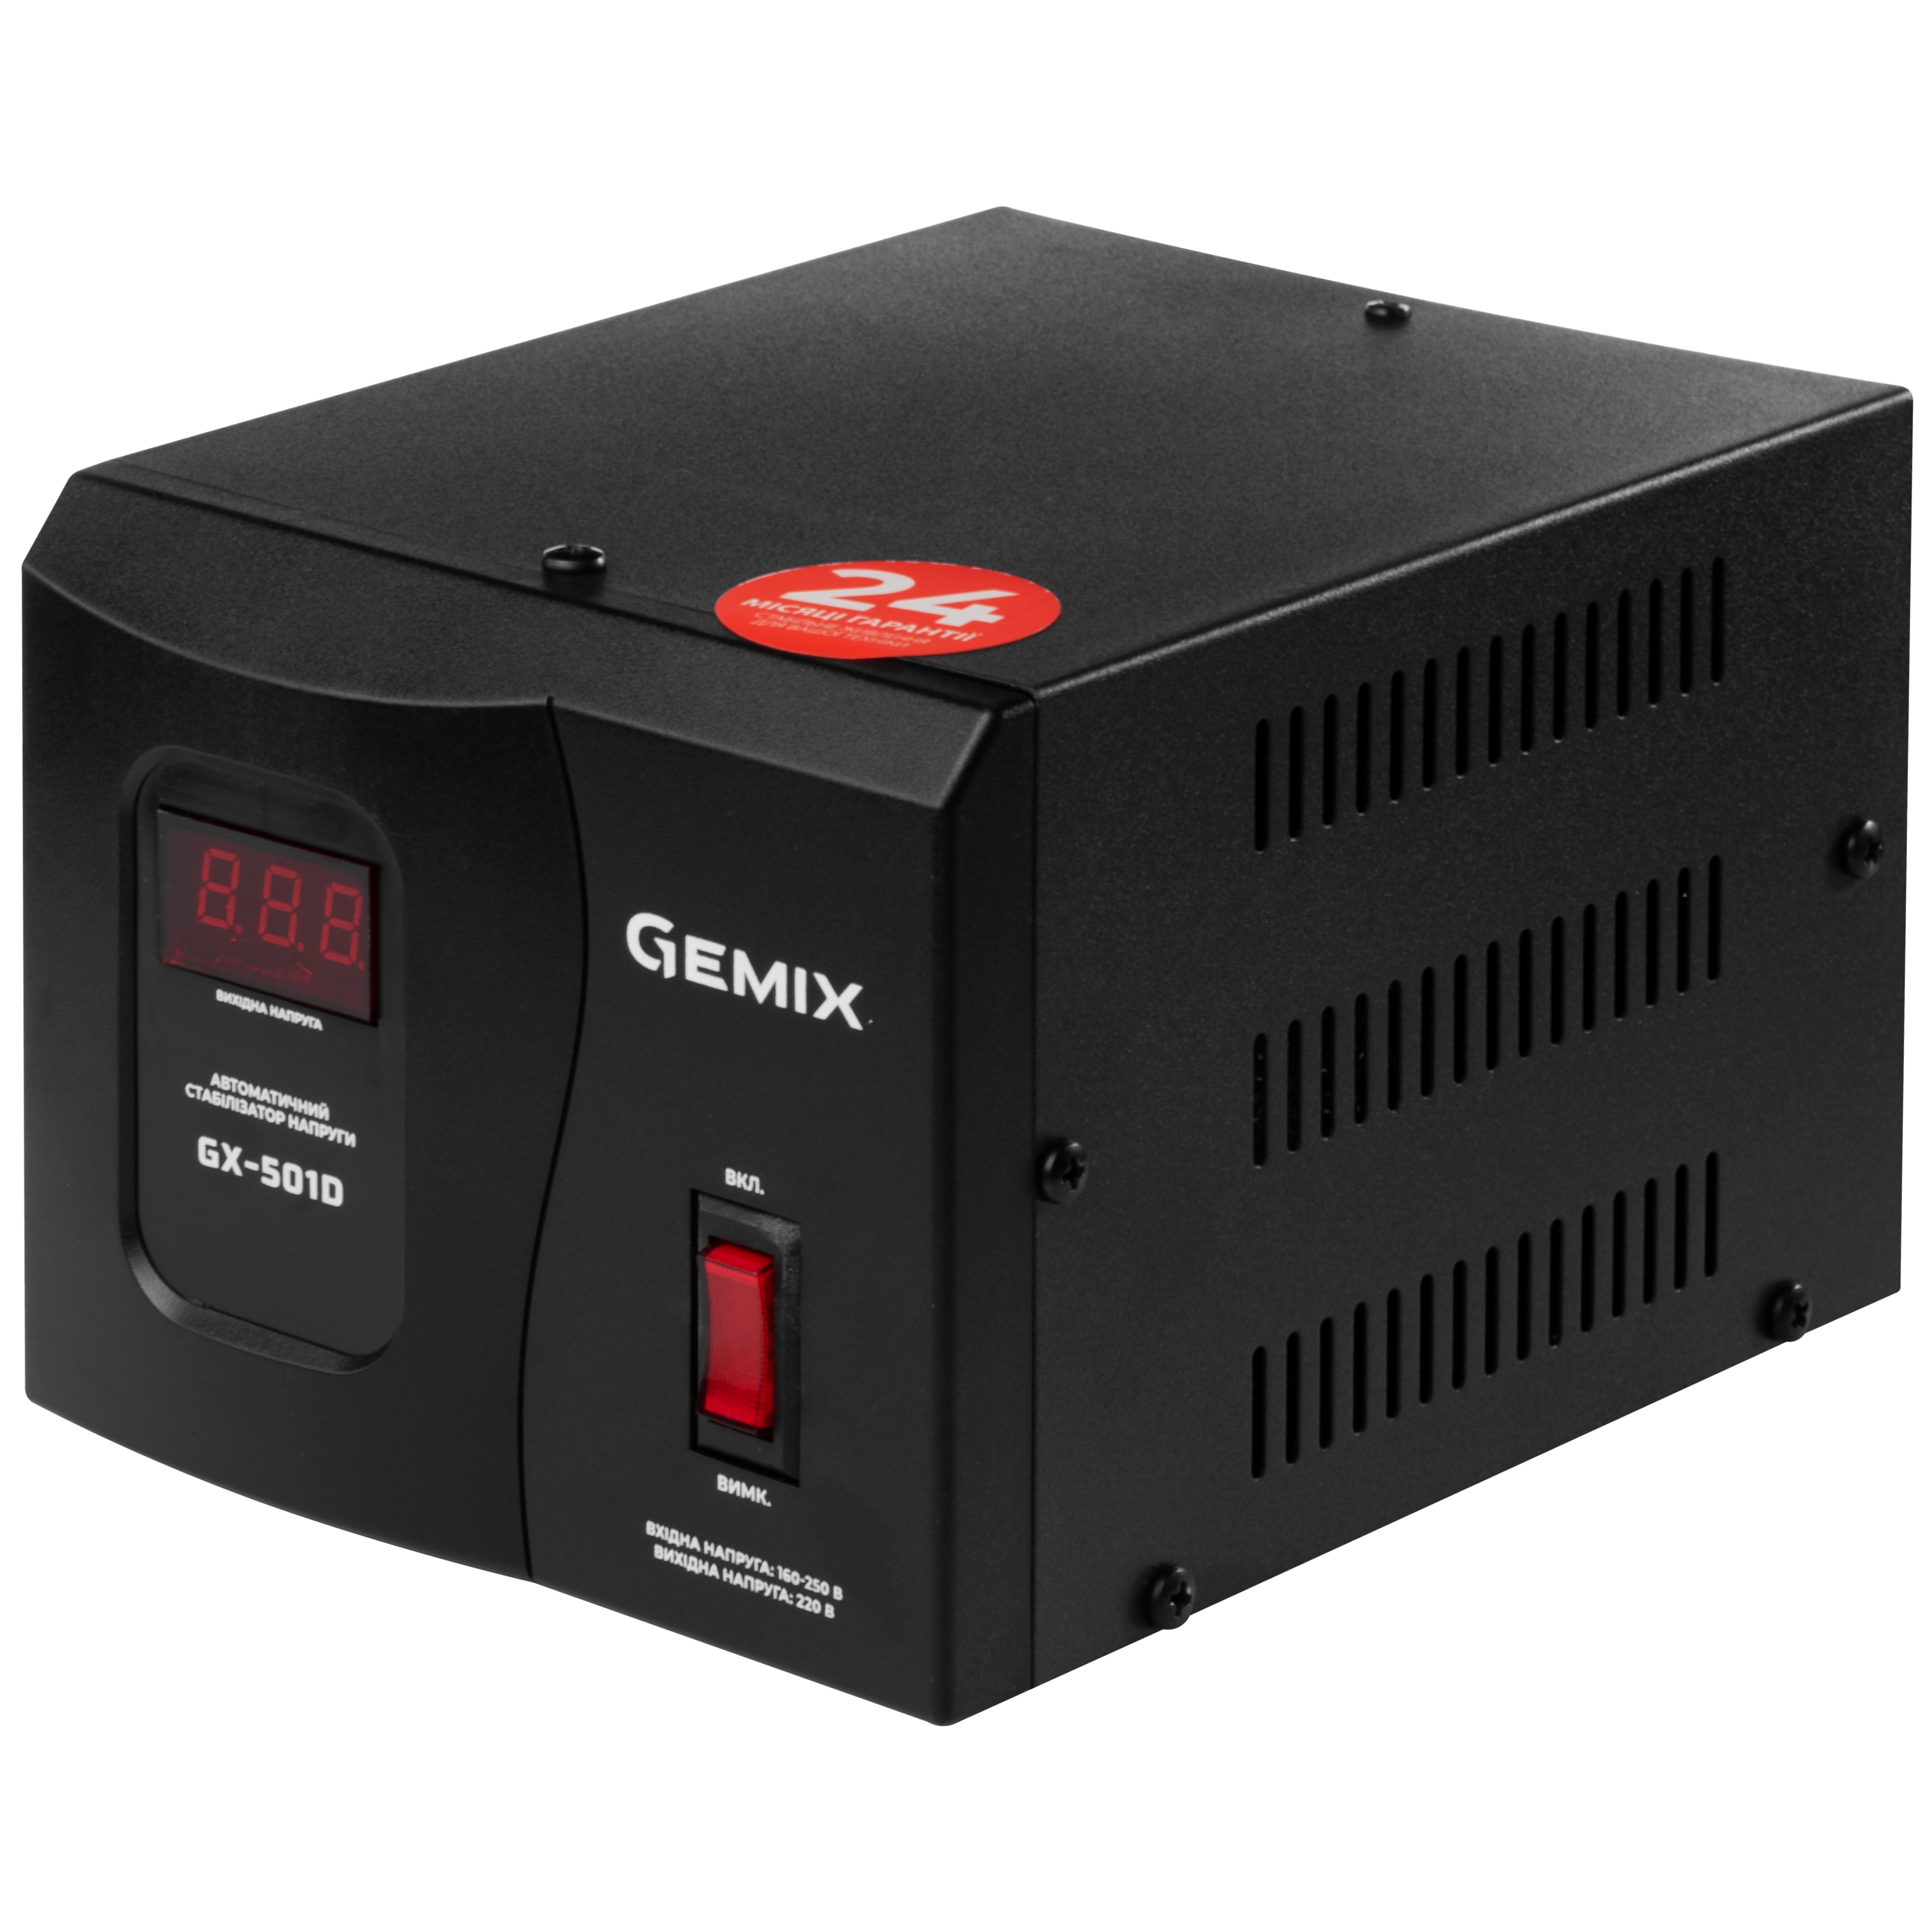 Купить однофазный стабилизатор напряжения Gemix GX-501D в Киеве